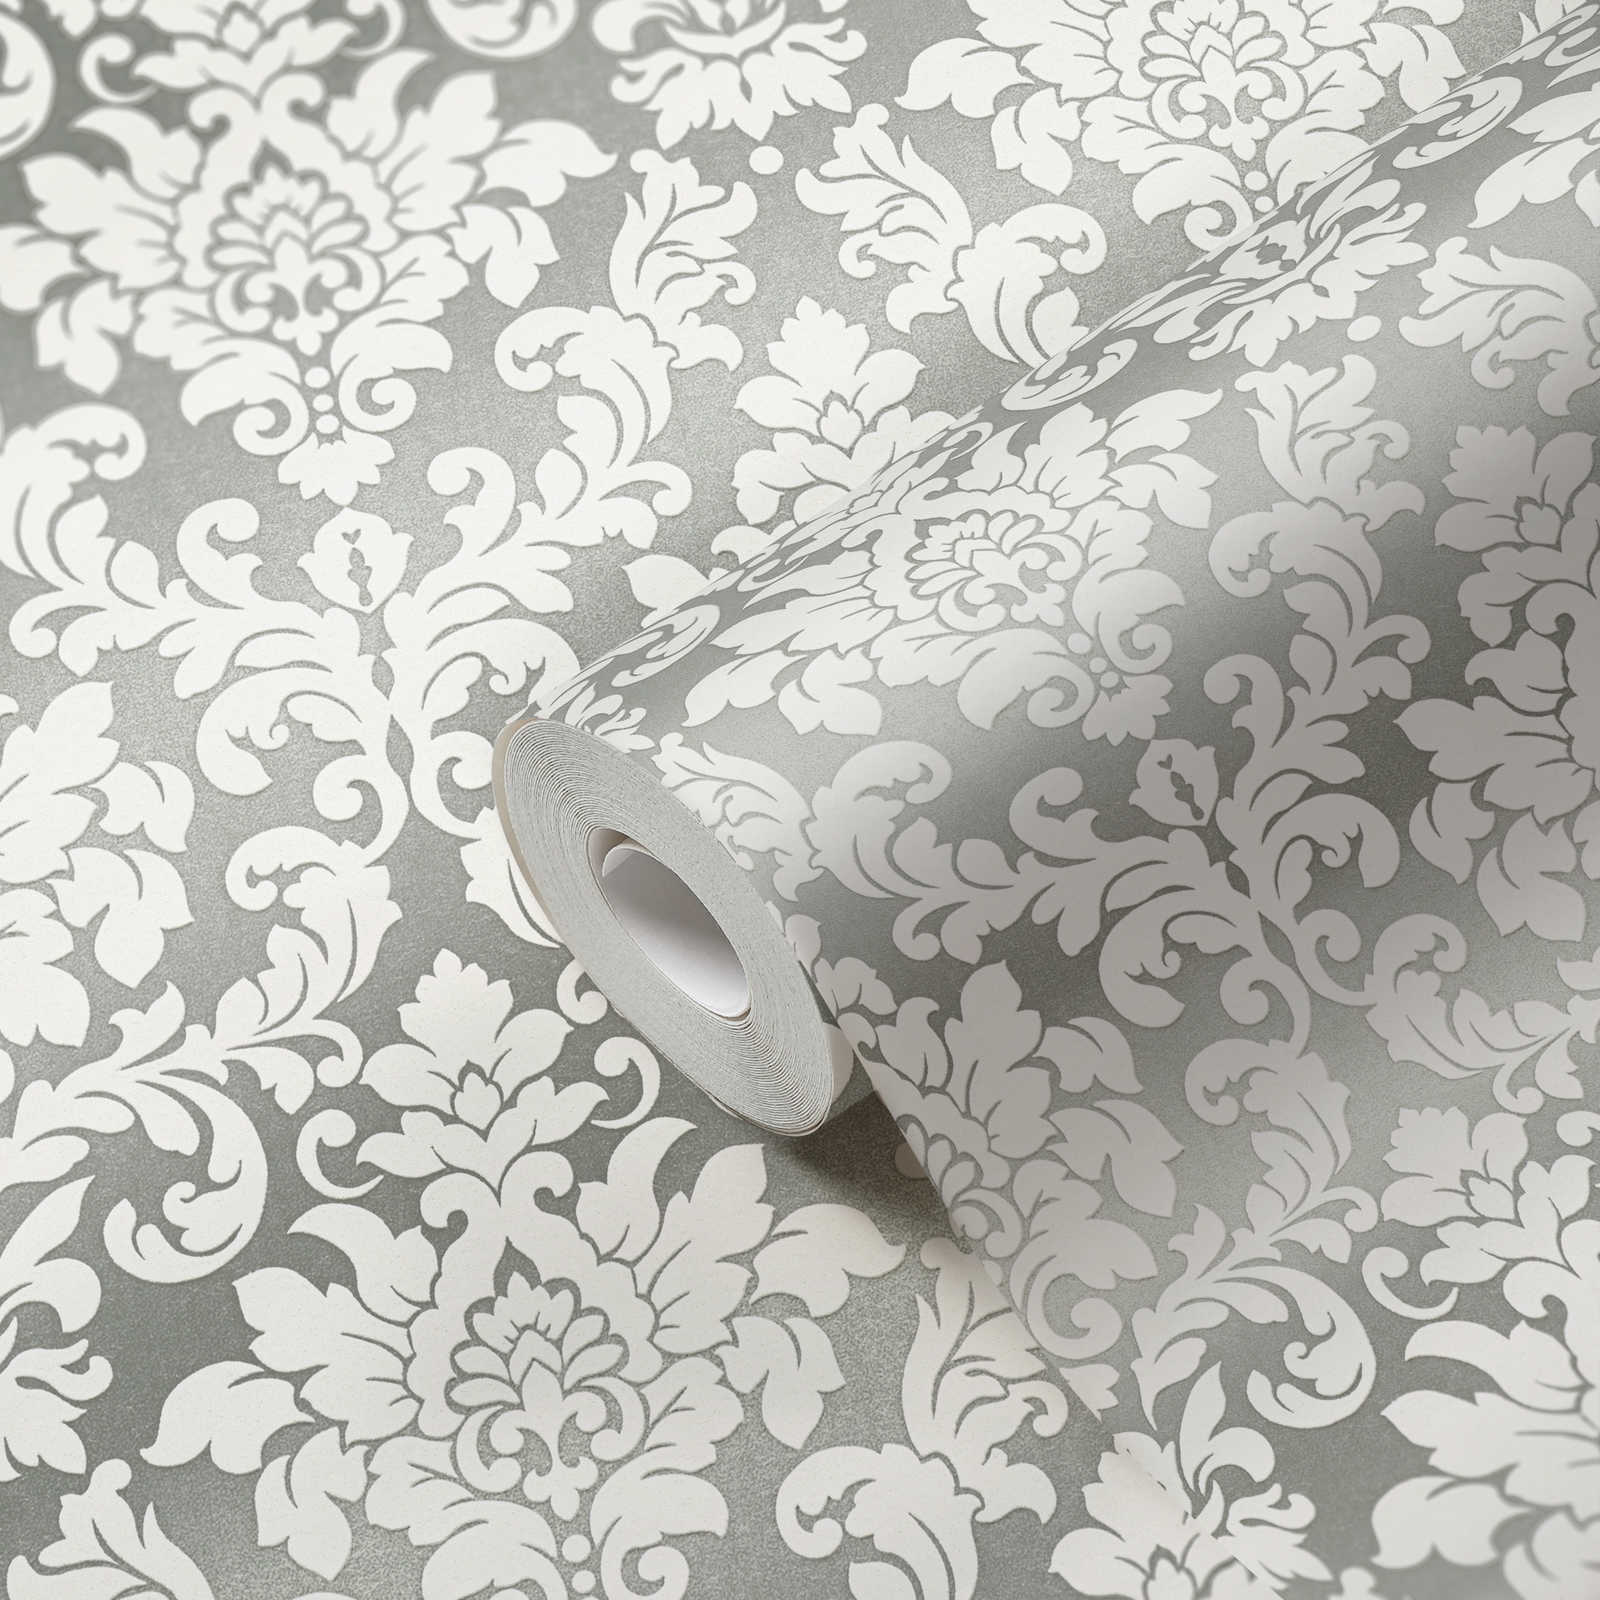             Zilver behang met wit ornament ontwerp
        